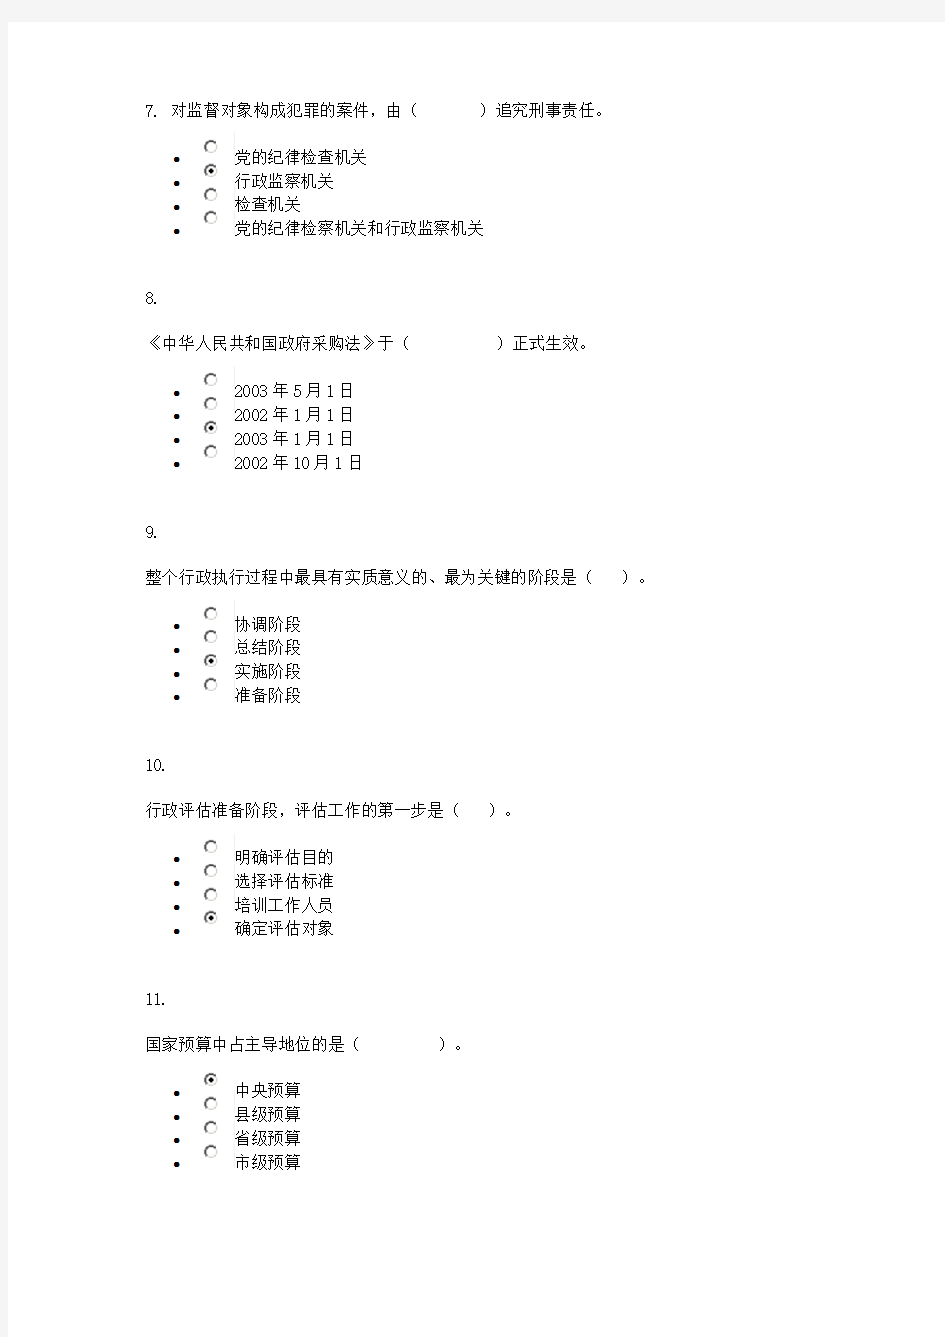 2015行政管理学网上形成性考试(三)0001